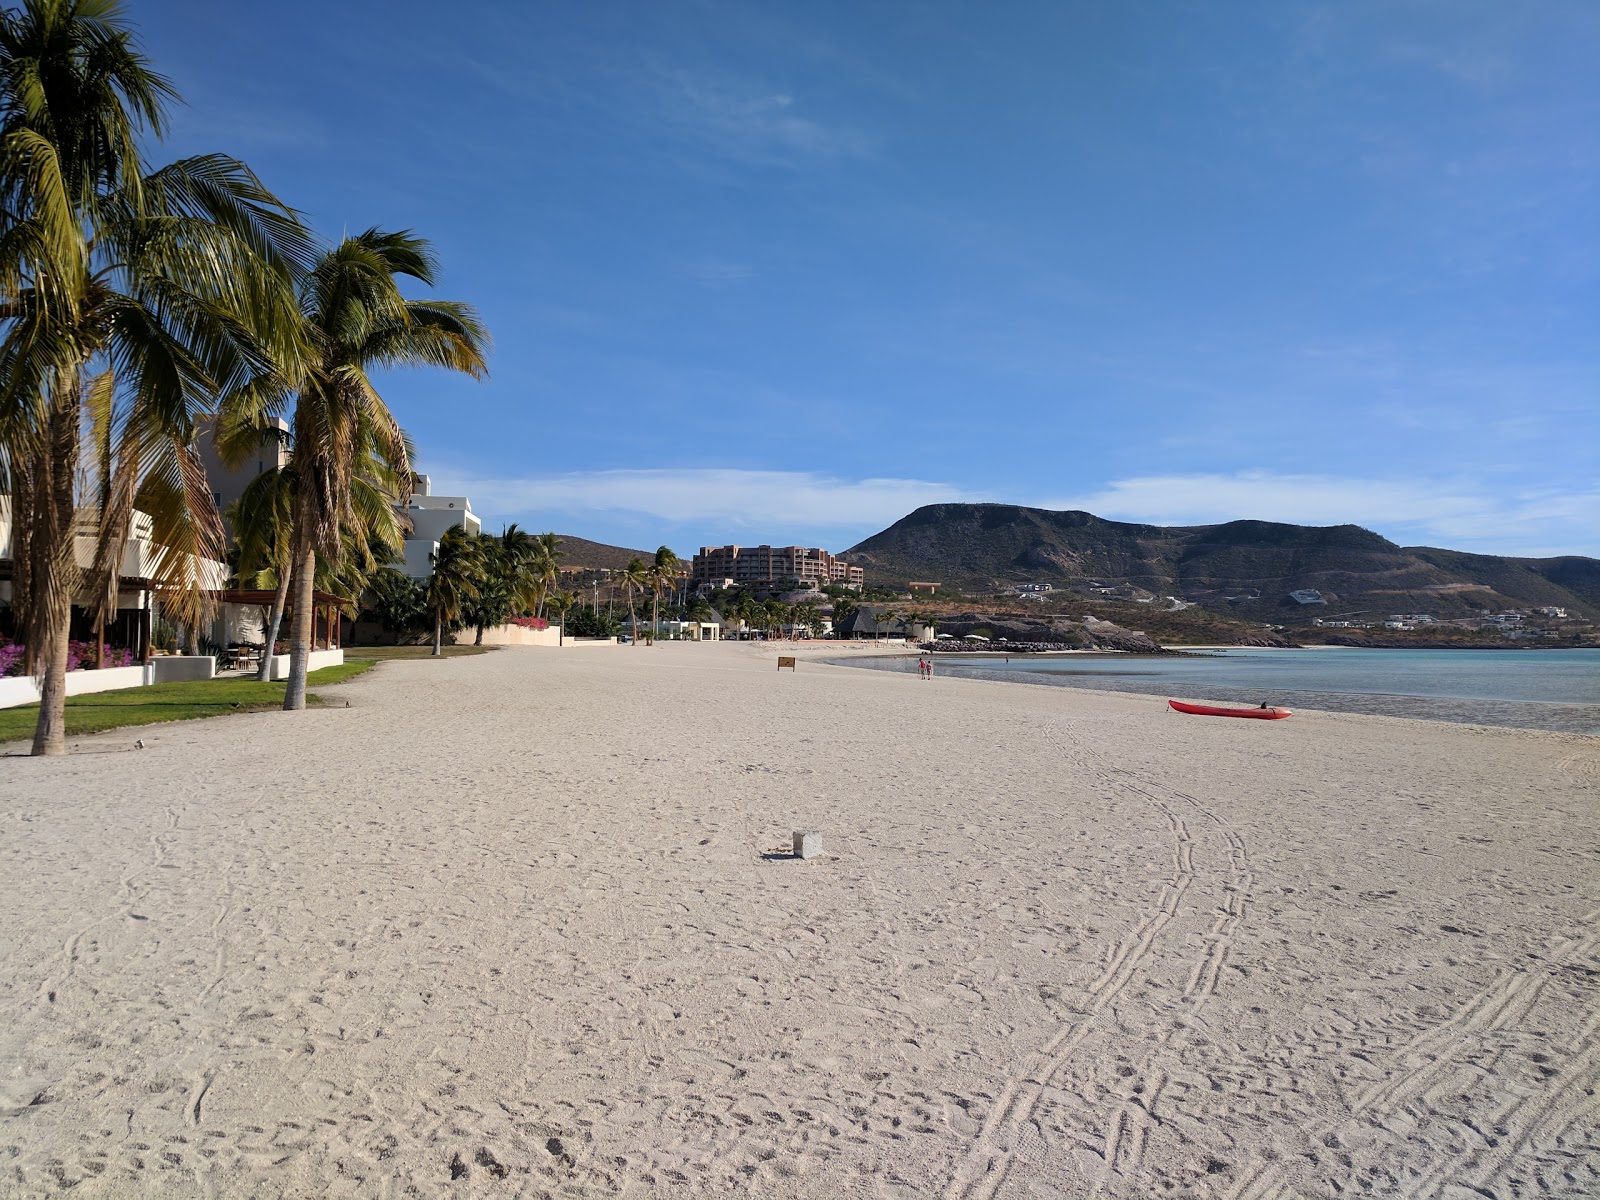 Valokuva Playa Puerta Cortesista. pinnalla kirkas hieno hiekka:n kanssa